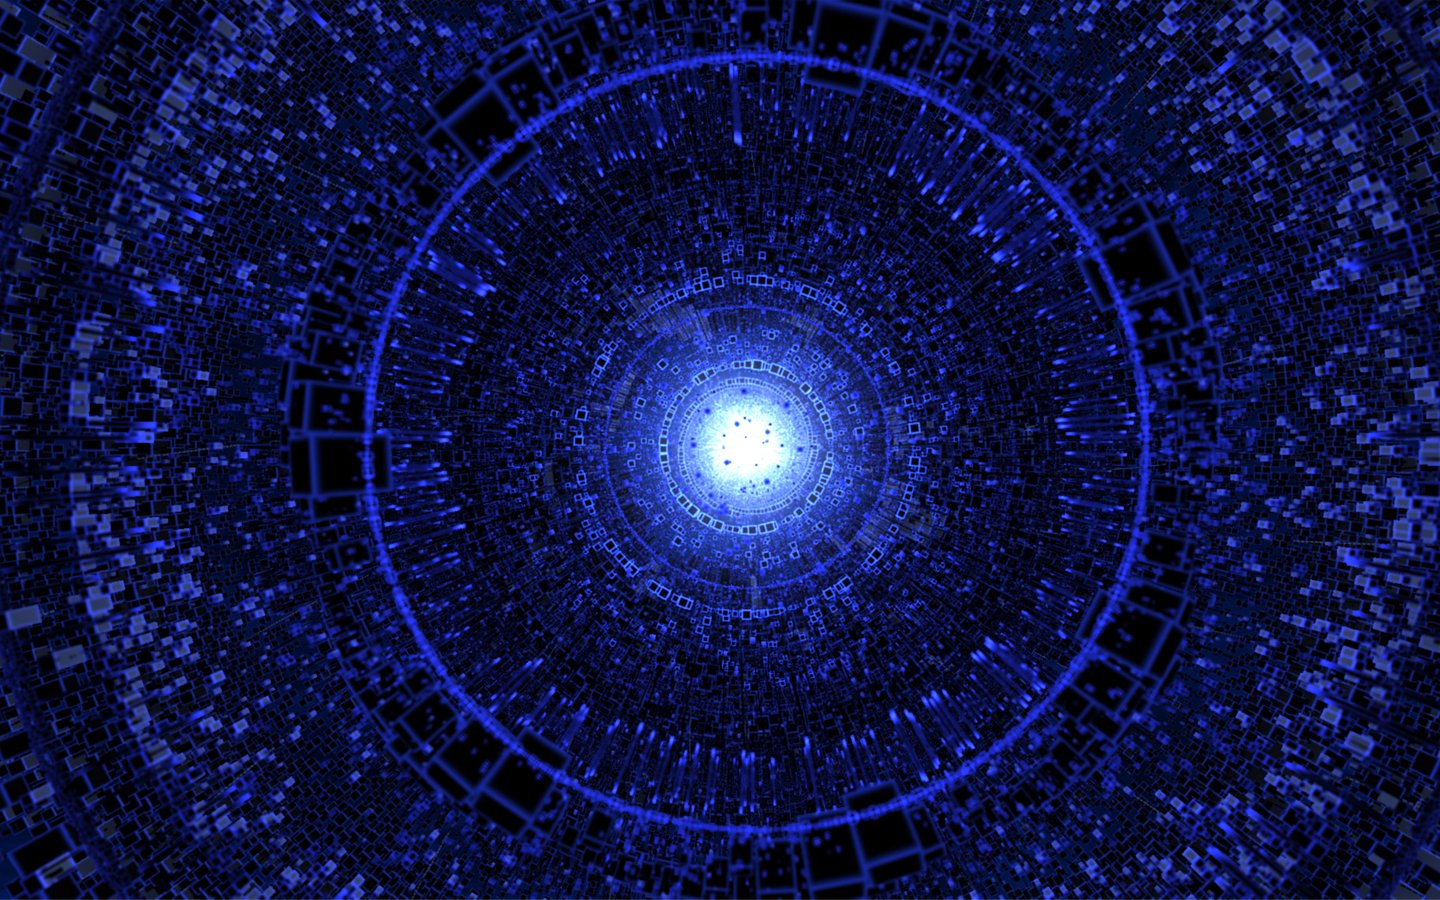 Light abstract blue spiral digital art wallpaper 1440x900 258286